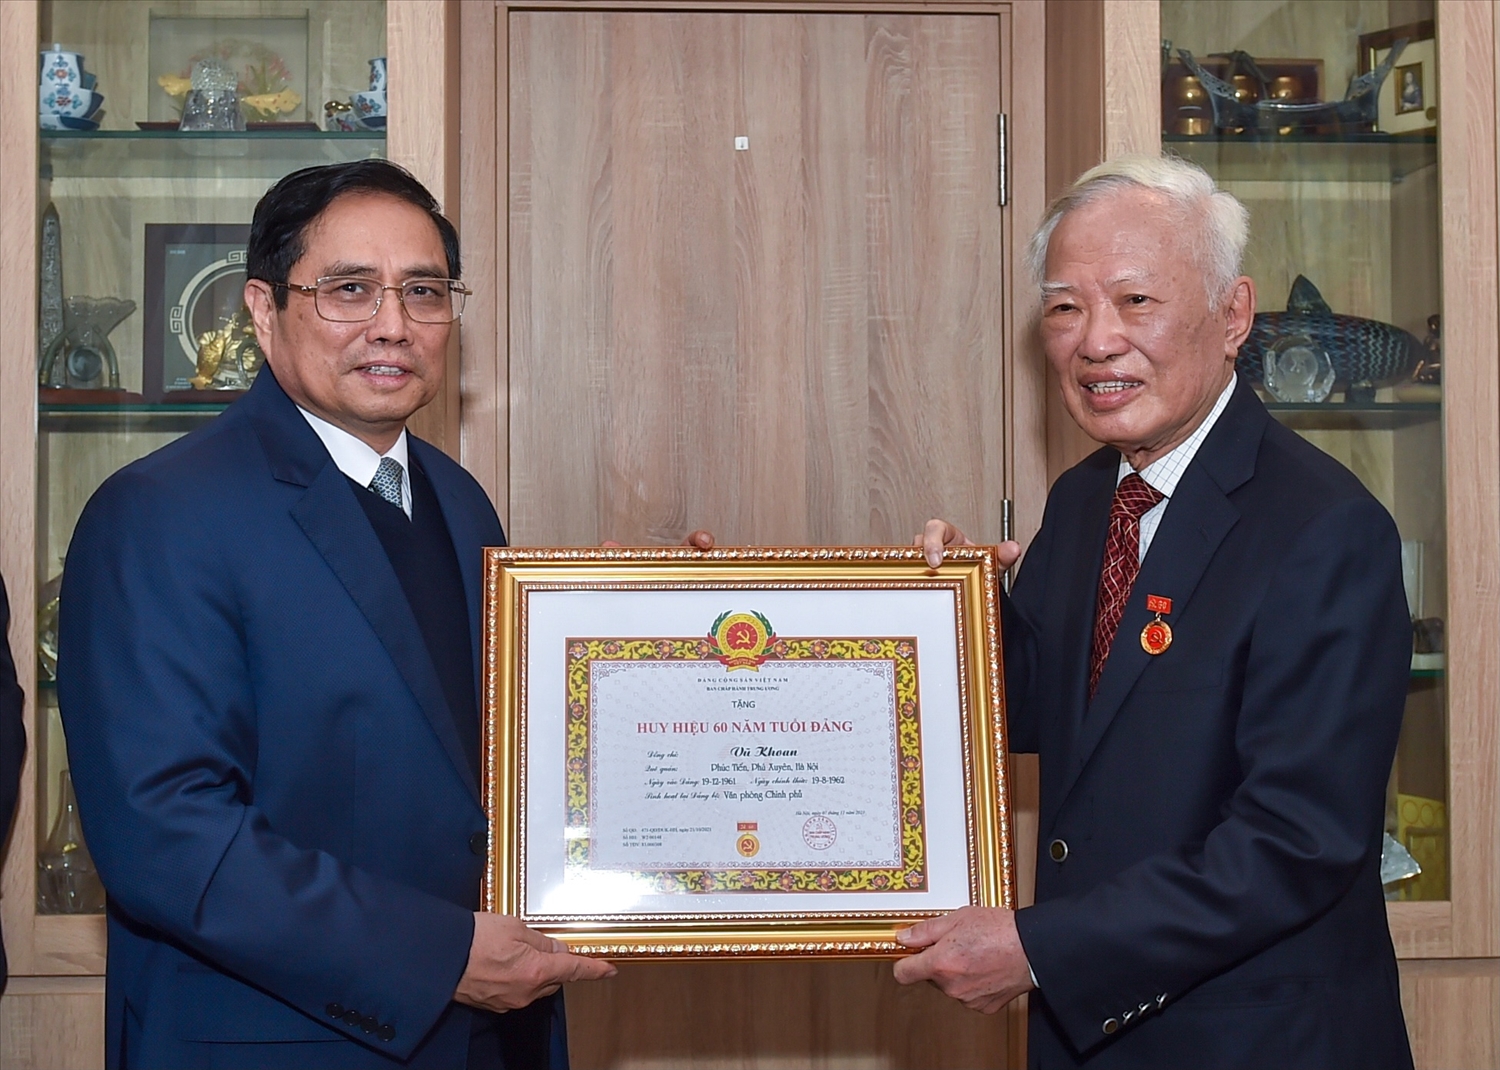 Thủ tướng Phạm Minh Chính trao Huy hiệu 60 năm tuổi Đảng tặng đồng chí Vũ Khoan - Ảnh: VGP/Nhật Bắc